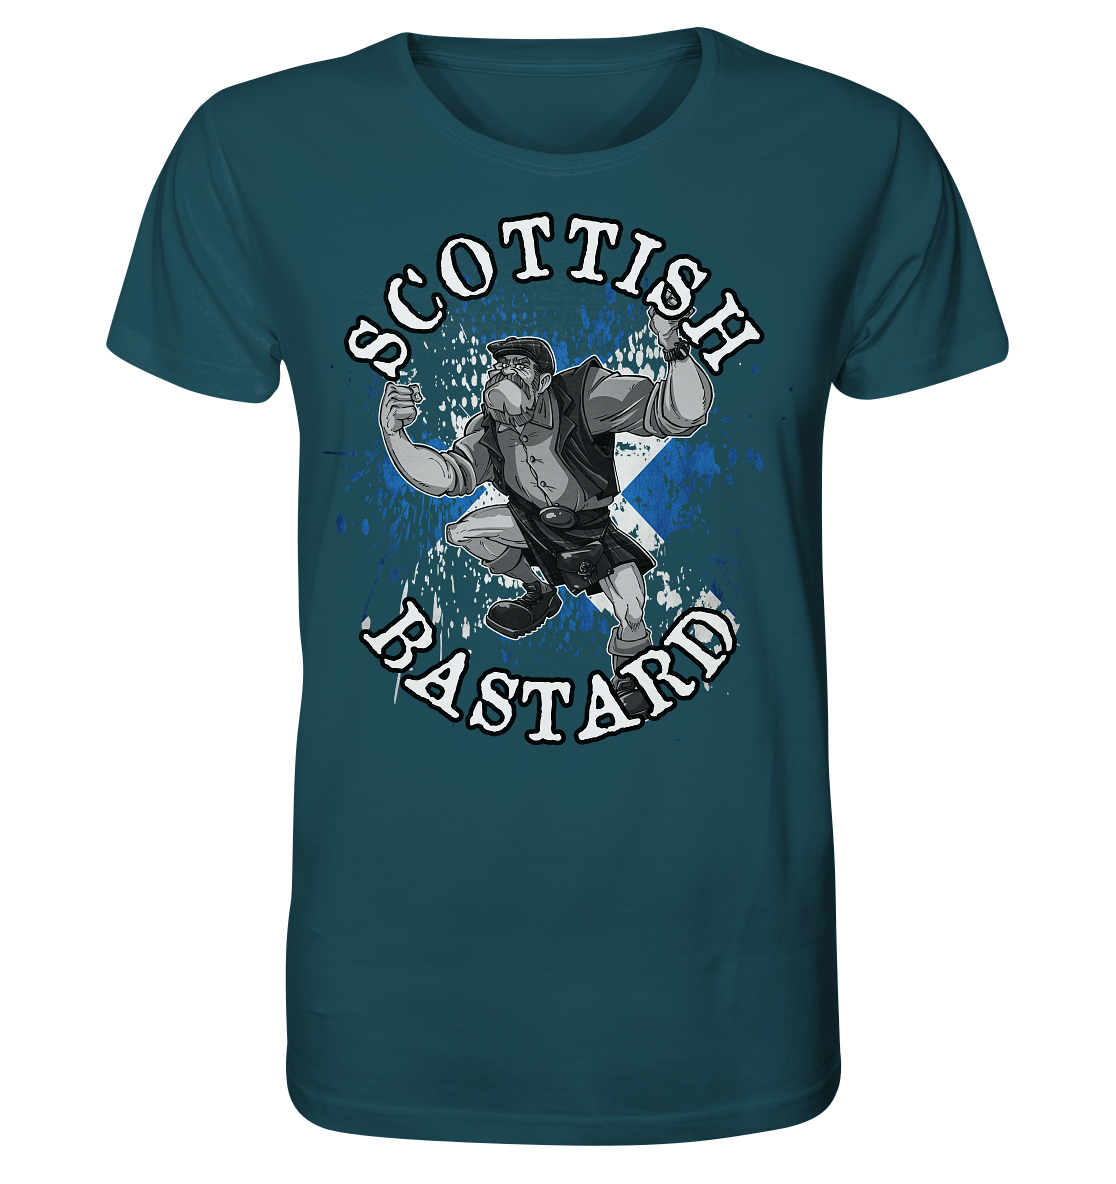 "Scottish Bastard" - Organic Shirt